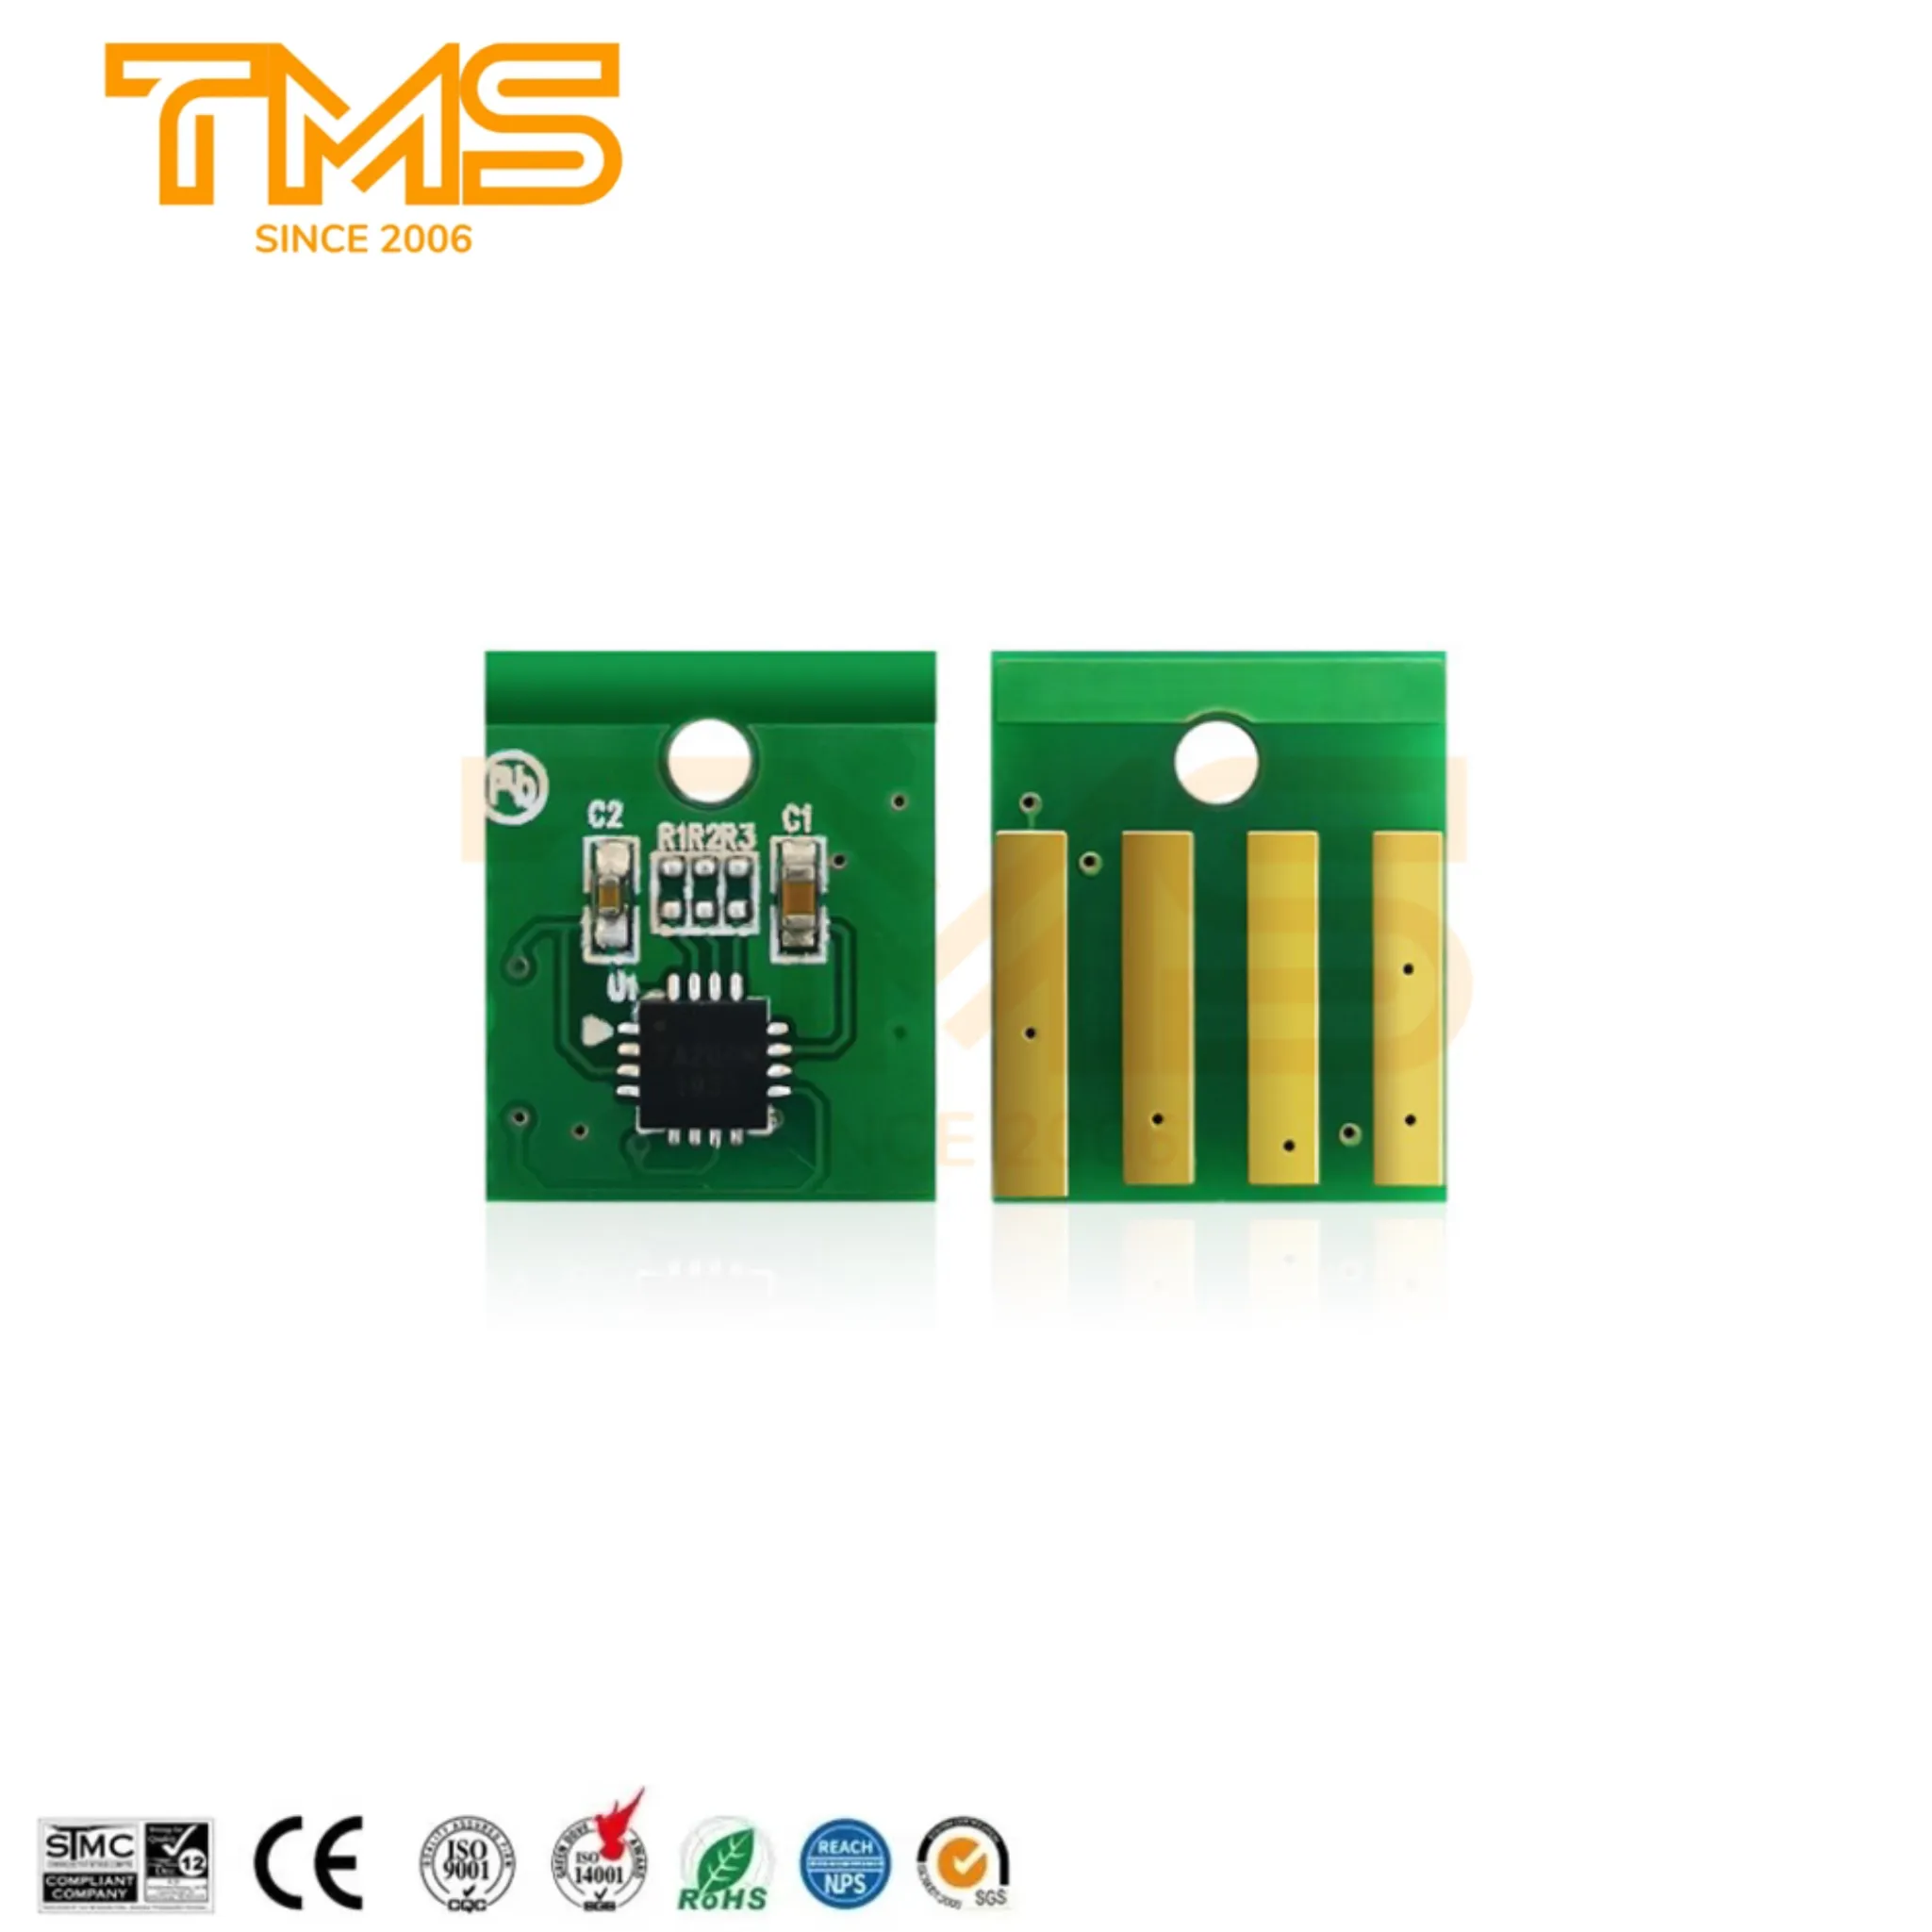 MX710 MS710 토너 칩 24D0002 for Lexmark MS810 MS811 MX811 MS710 MX711 MX712 토너 카트리지 칩 범용 칩